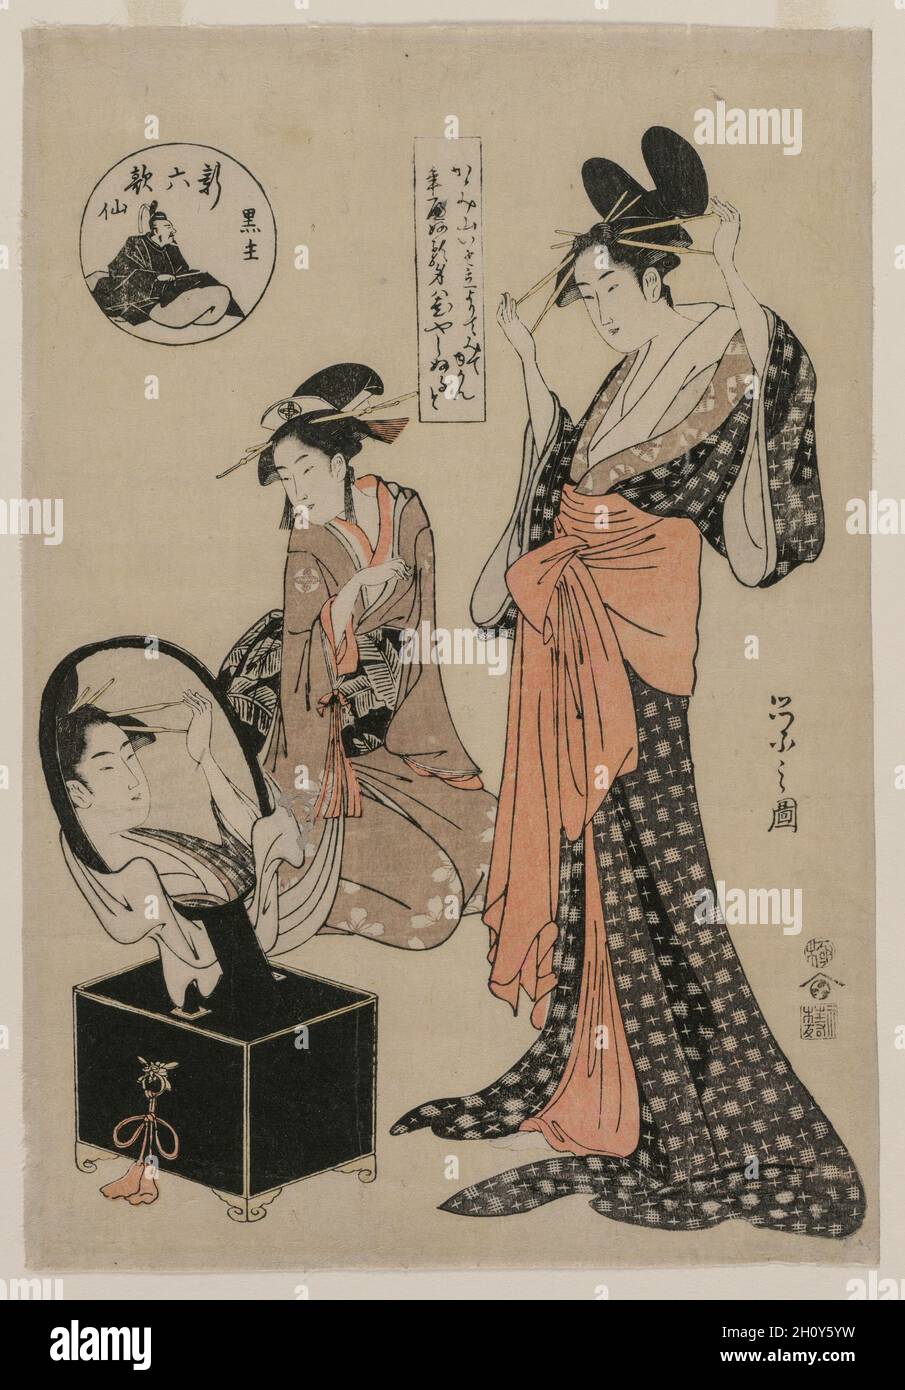 Kuronushi de la série The New six Immortal Poets, c.1795. Chōbunsai Eishi (japonais, 1756-1829).Imprimé color block; feuille: 33.4 x 20.5 cm (13 1/8 x 8 1/16 po.).Cet imprimé montre une courtisane qui ajuste sa coiffure avant un miroir lorsque son accompagnateur regarde.Dans la cartouche à côté d'elle est un poème de ?tomo no Kuronishi, un cours de la période Heian célébré comme l'un des six poètes immortels.Son portrait et son nom apparaissent dans la cartouche de titre en forme de disque.Le poème se lit comme suit: 'Montagne de miroir / a été élevé / pour nous montrer tous / notre Seigneur vivra mille ans!'Le poème apparaît dans le Ant Banque D'Images